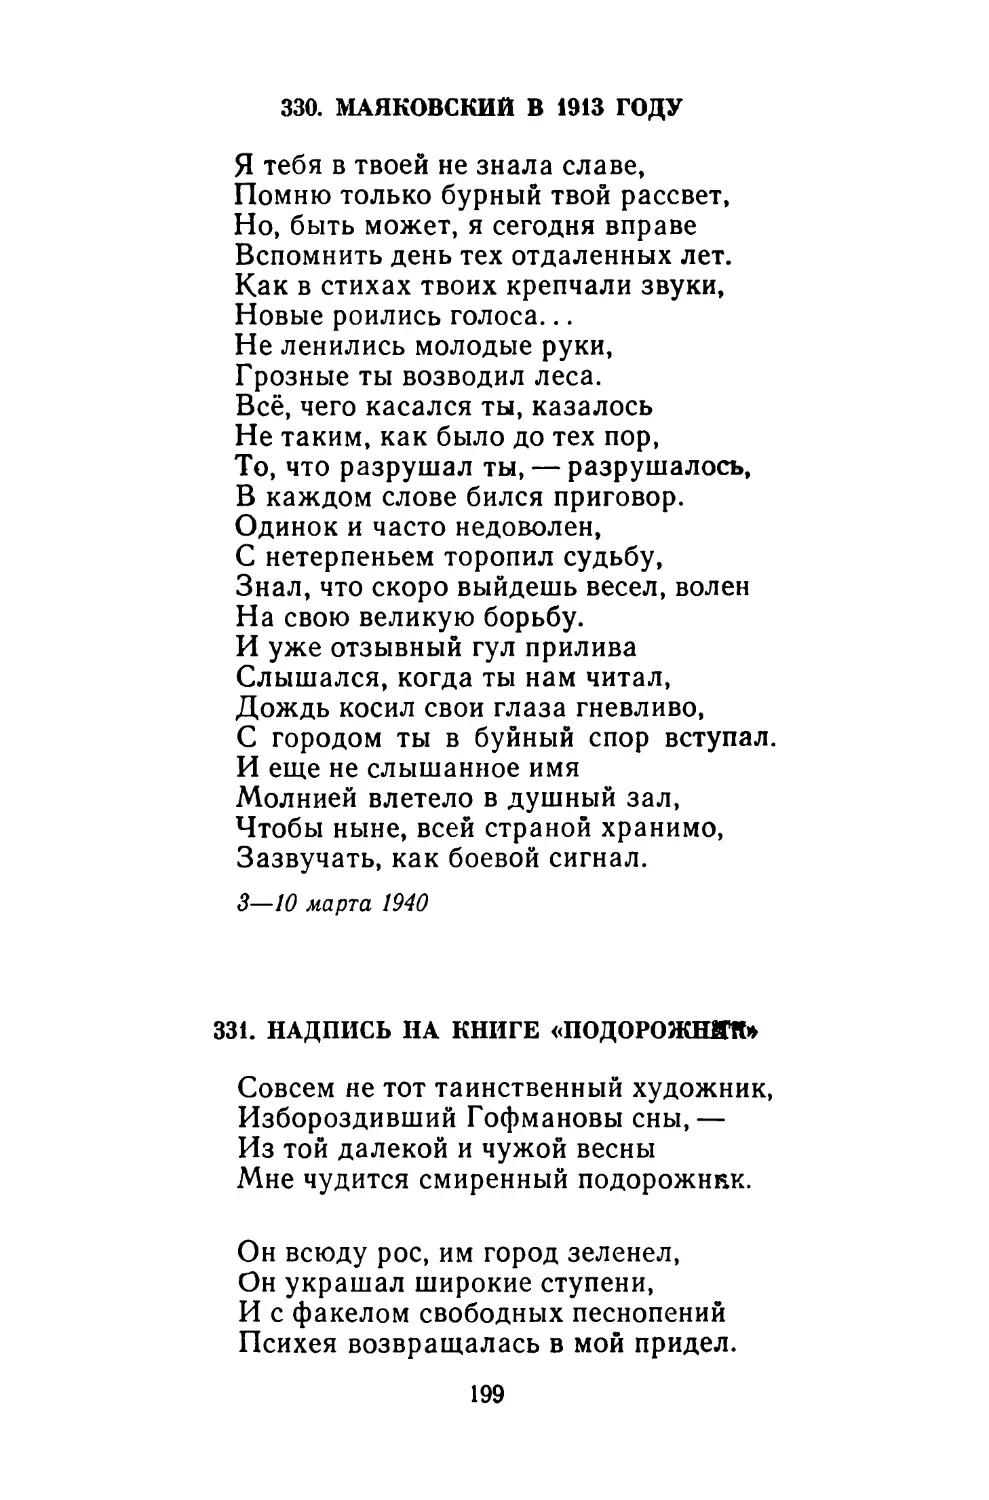 330. Маяковский в 1913 году
331. Надпись на книге «Подорожник»